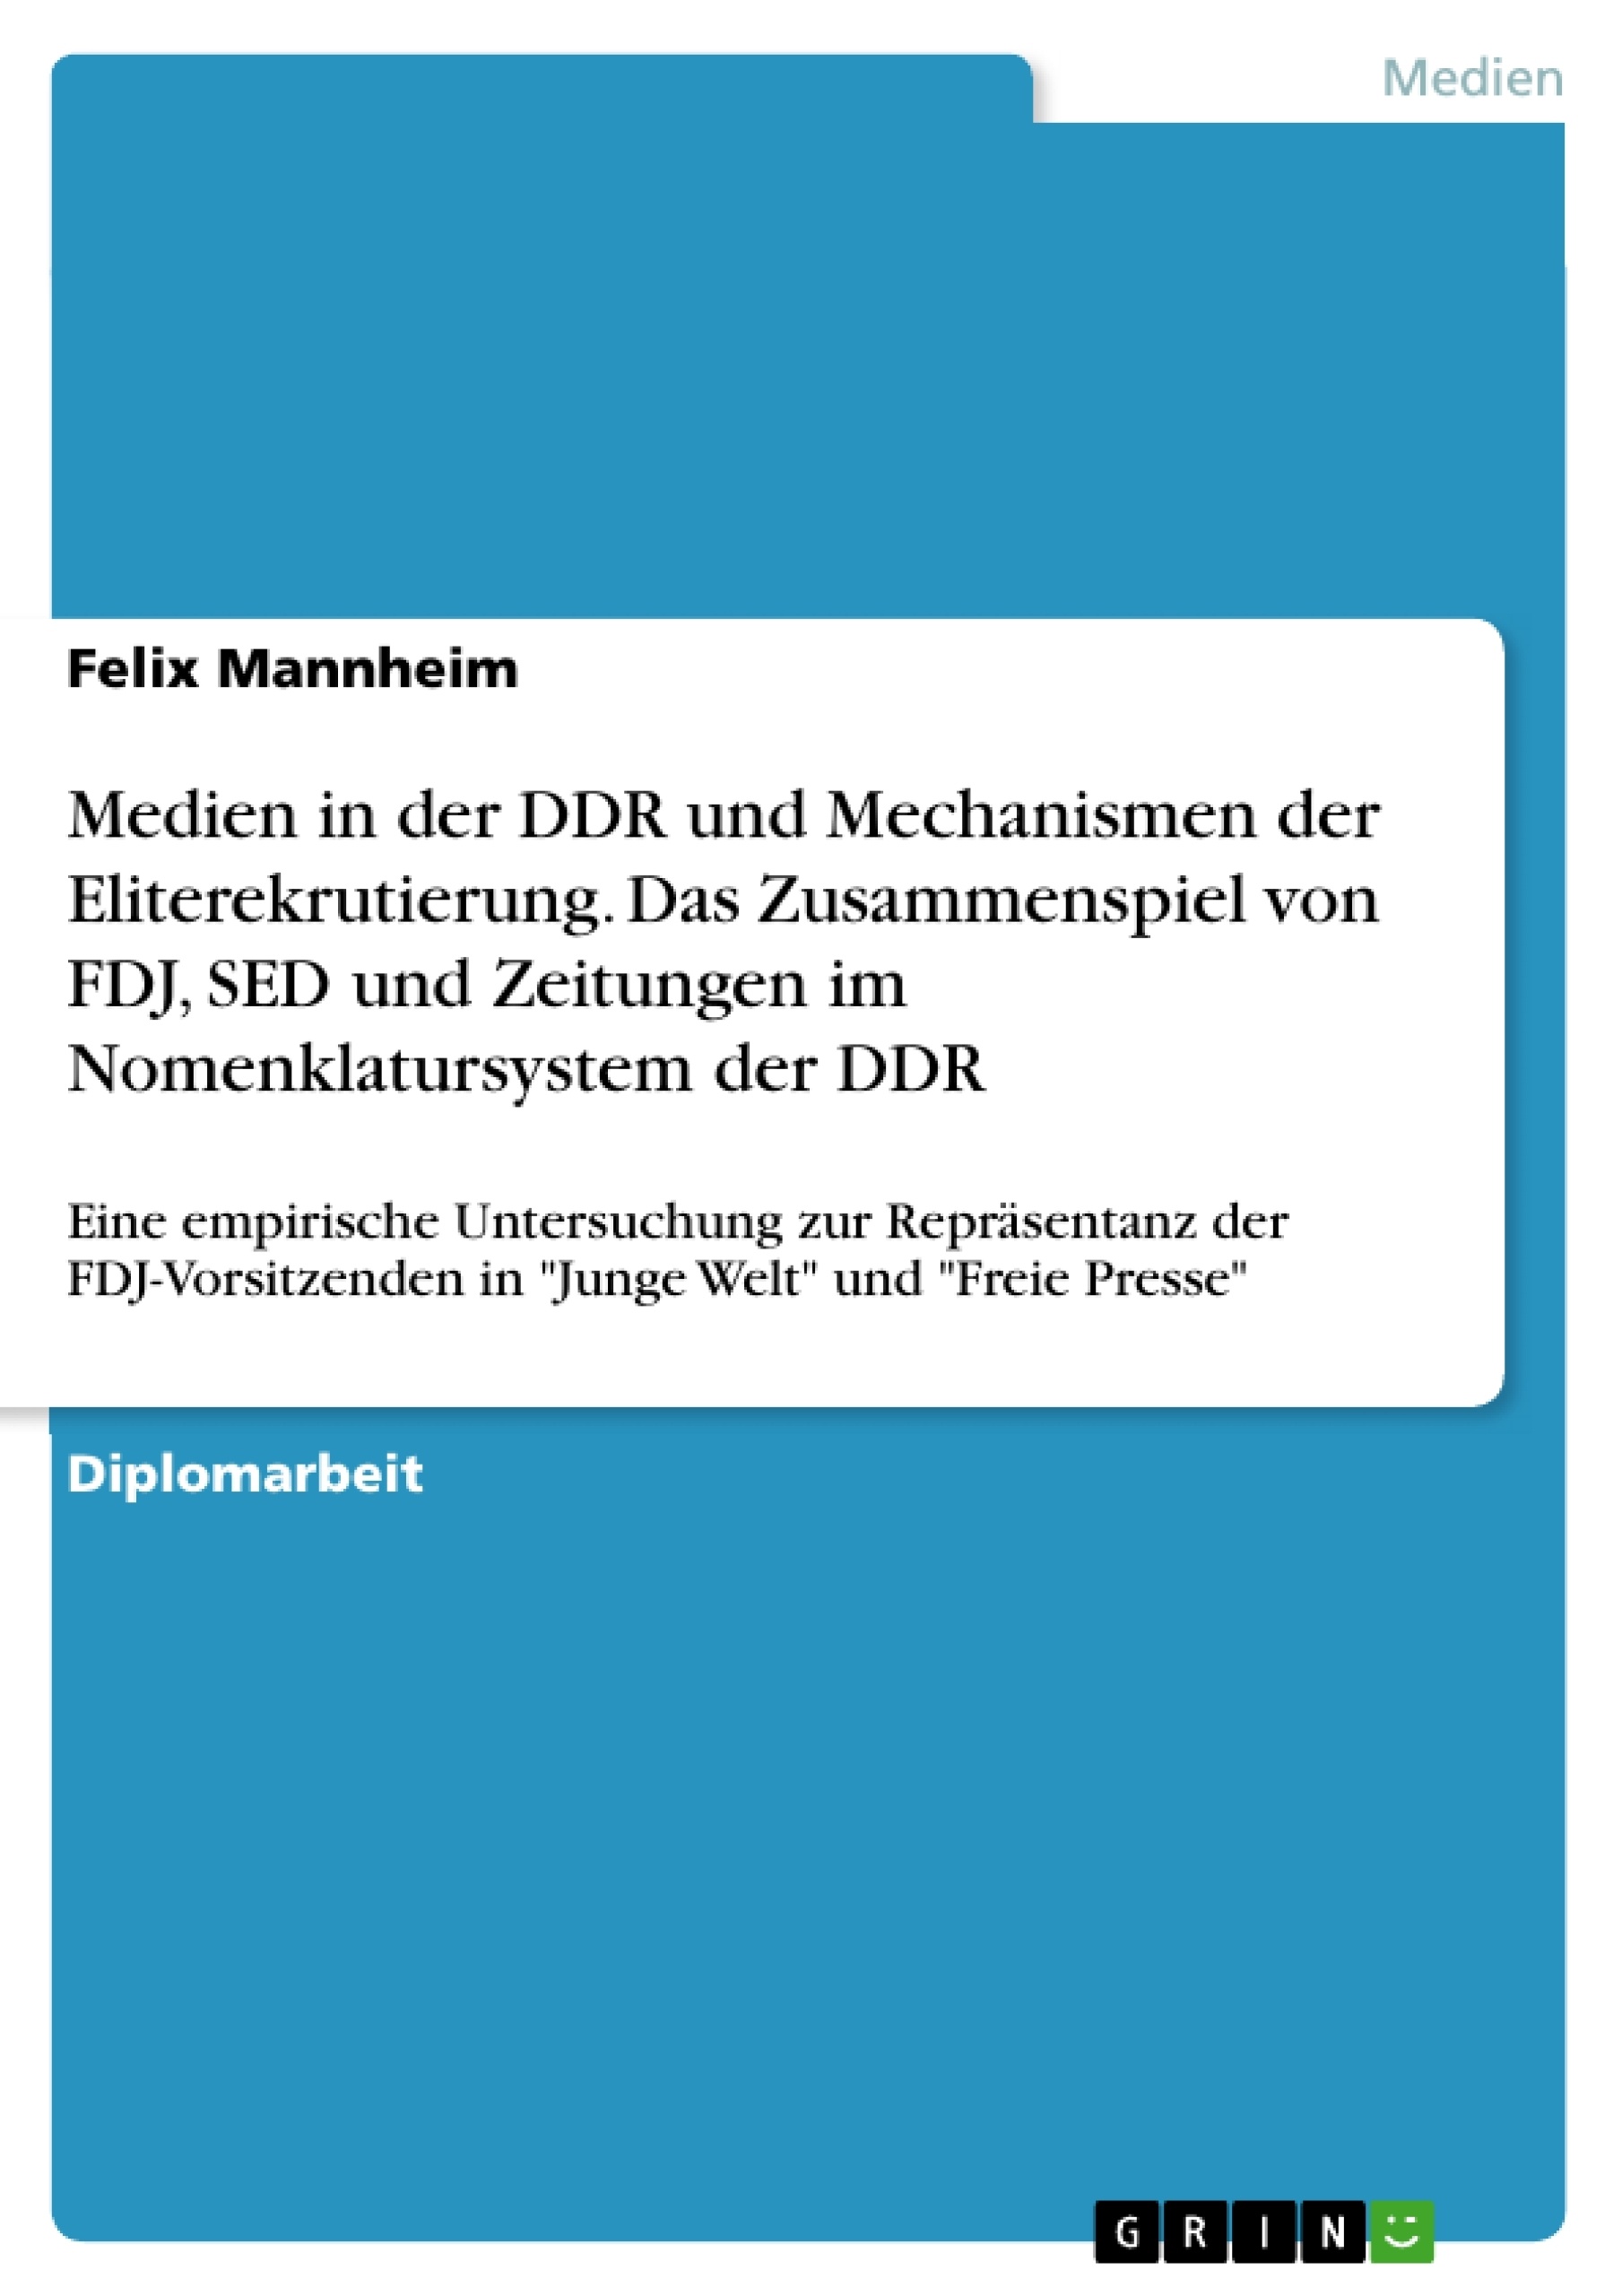 Titel: Medien in der DDR und Mechanismen der Eliterekrutierung. Das Zusammenspiel von FDJ, SED und Zeitungen im Nomenklatursystem der DDR